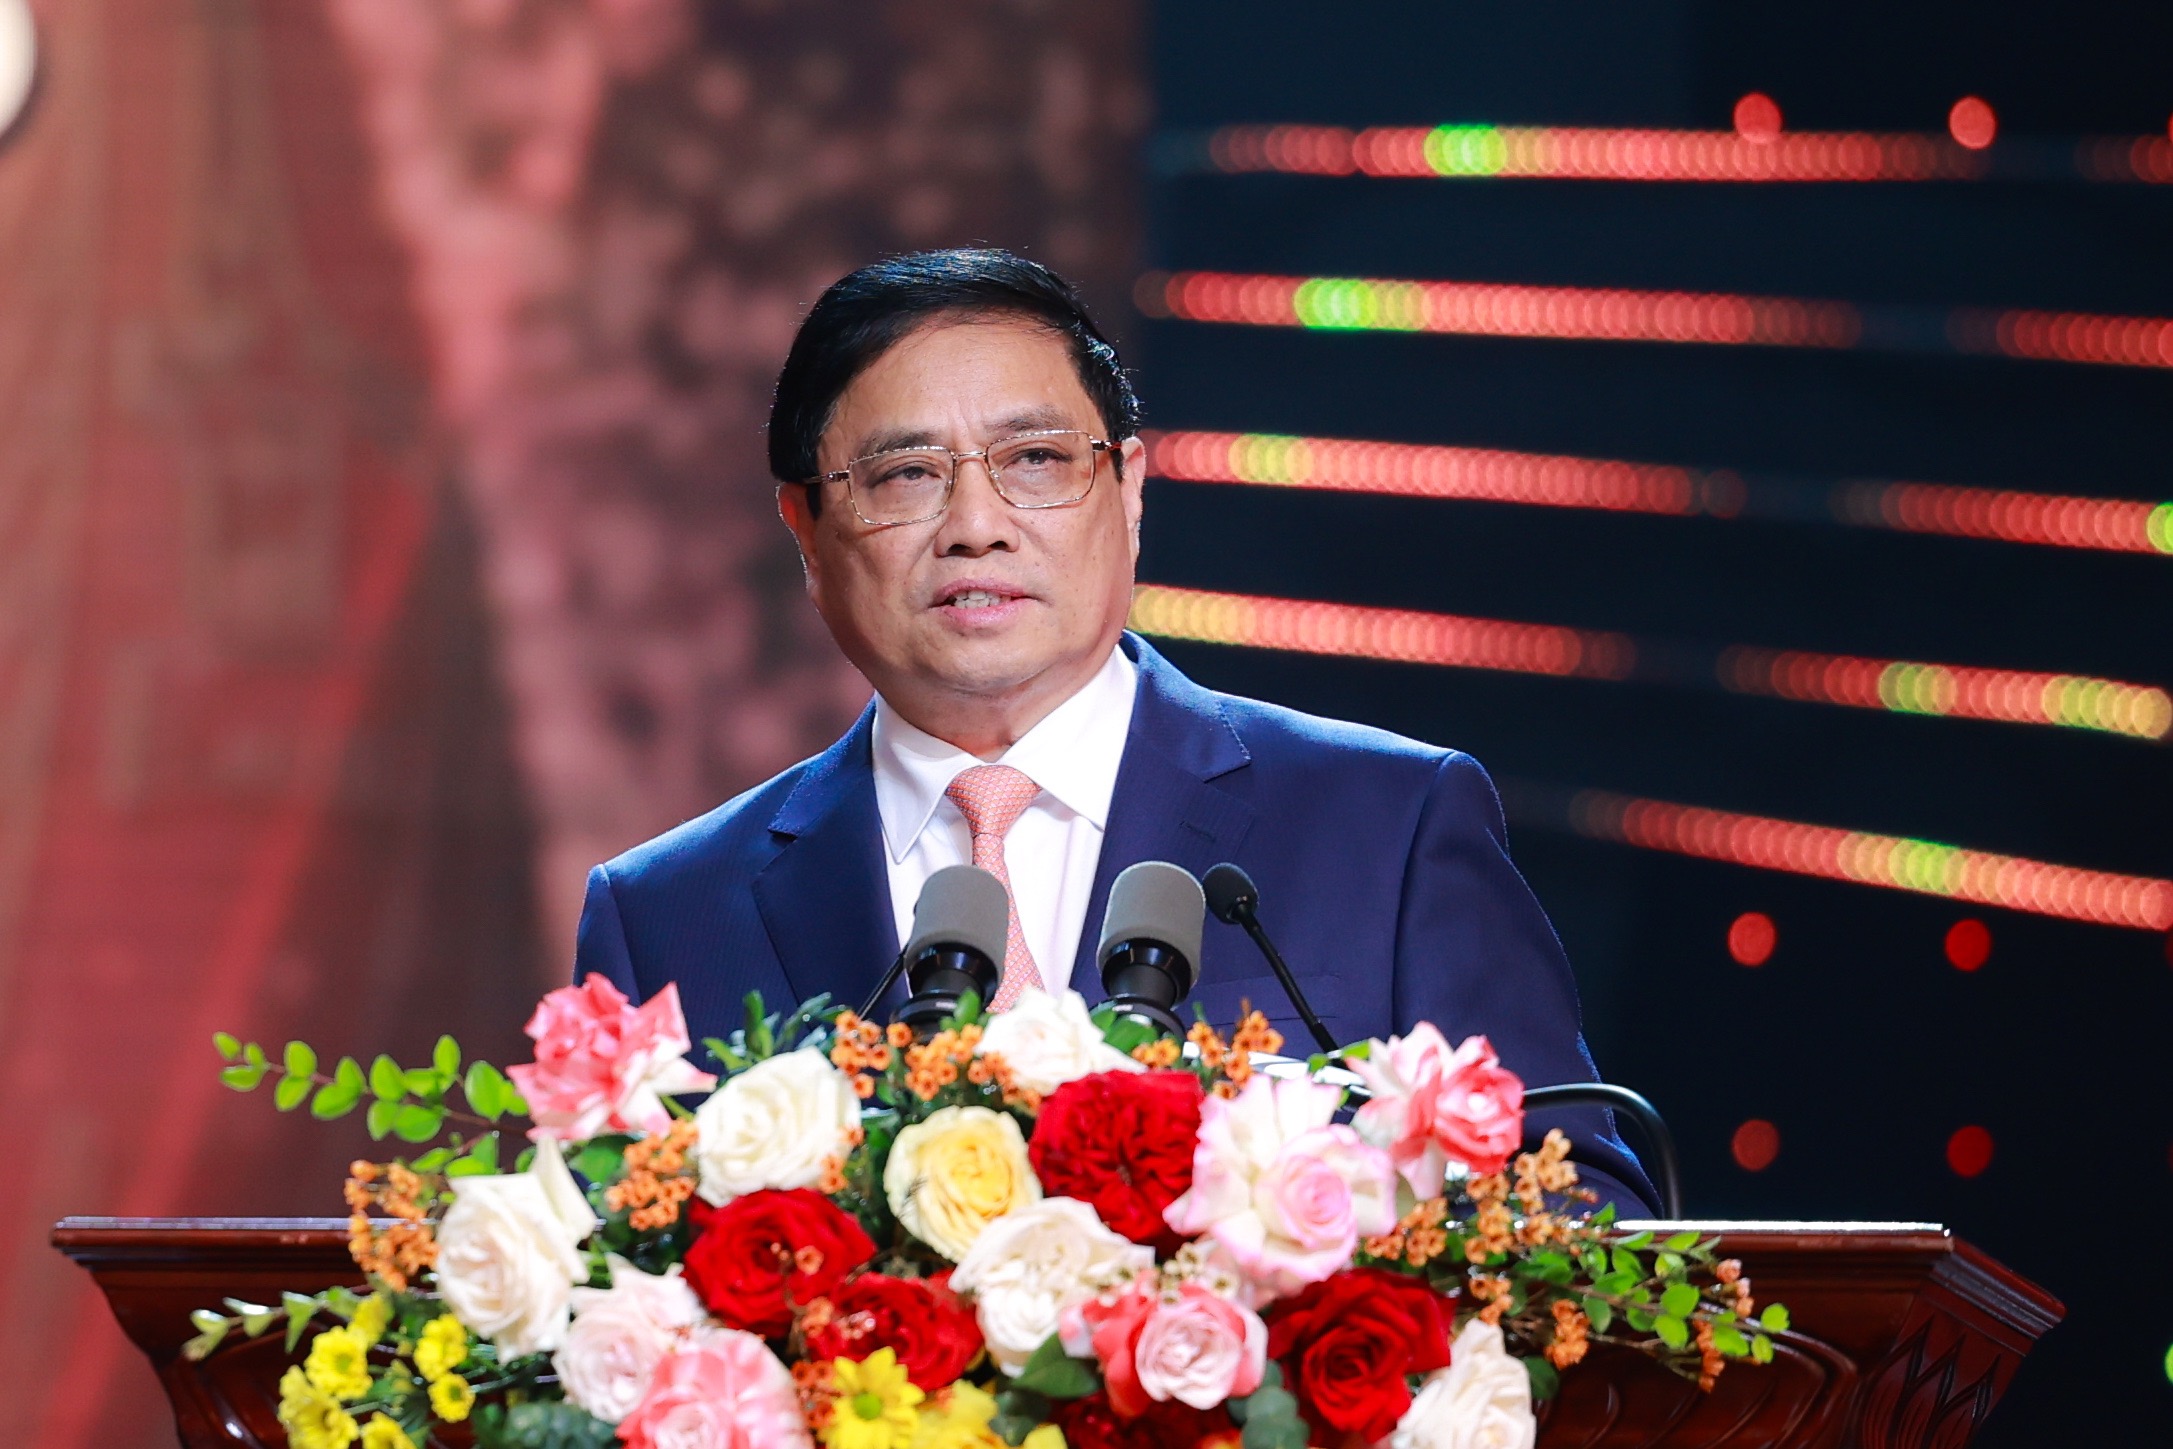 Phát biểu của Thủ tướng Chính phủ Phạm Minh Chính tại Lễ công bố và trao Giải báo chí toàn quốc về xây dựng Đảng (mang tên Búa liềm vàng) lần thứ VIII - năm 2023